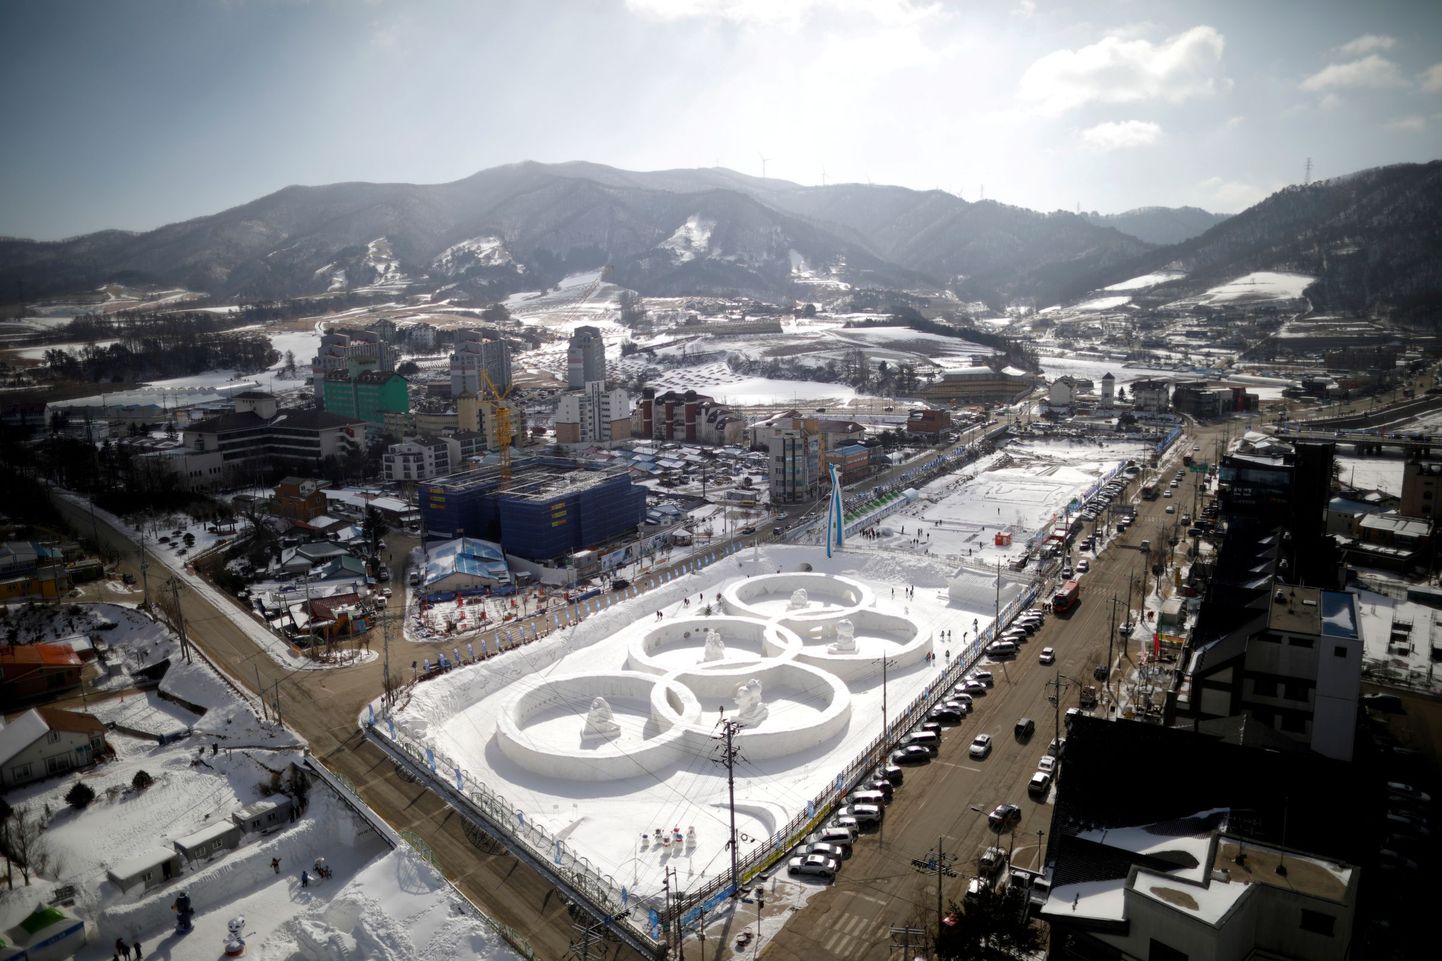 Selline nägi välja Pyeongchang 10. veebruaril 2017 ehk täpselt aasta enne taliolümpiat. Kõigi eelduste kohaselt ei jää tali ka tänavu taeva.